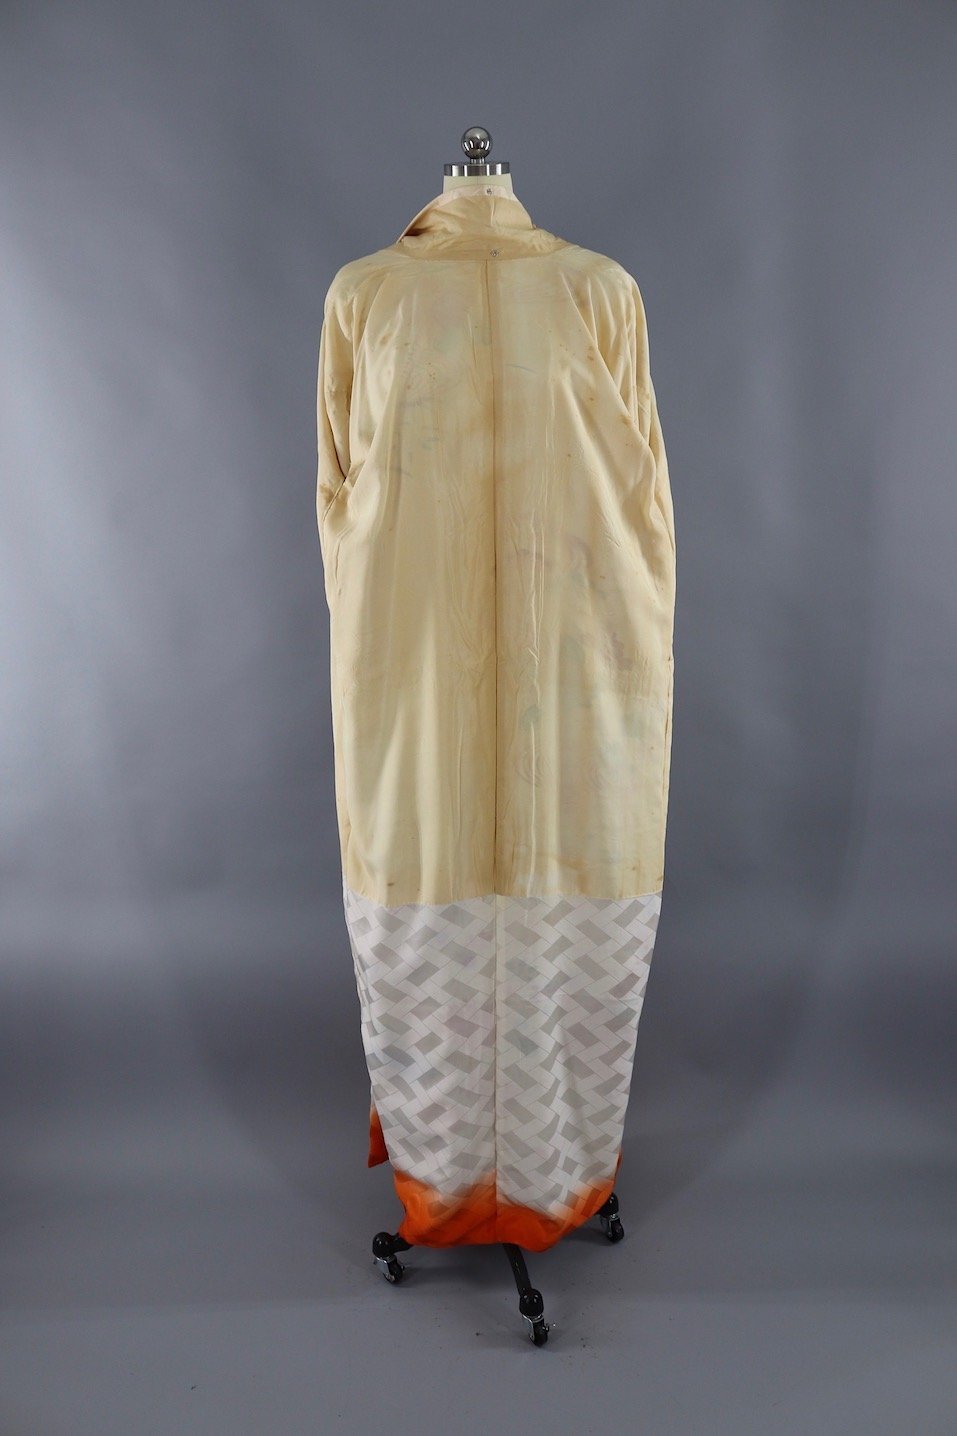 Vintage Silk Kimono Robe - Gold and Orange Floral - ThisBlueBird